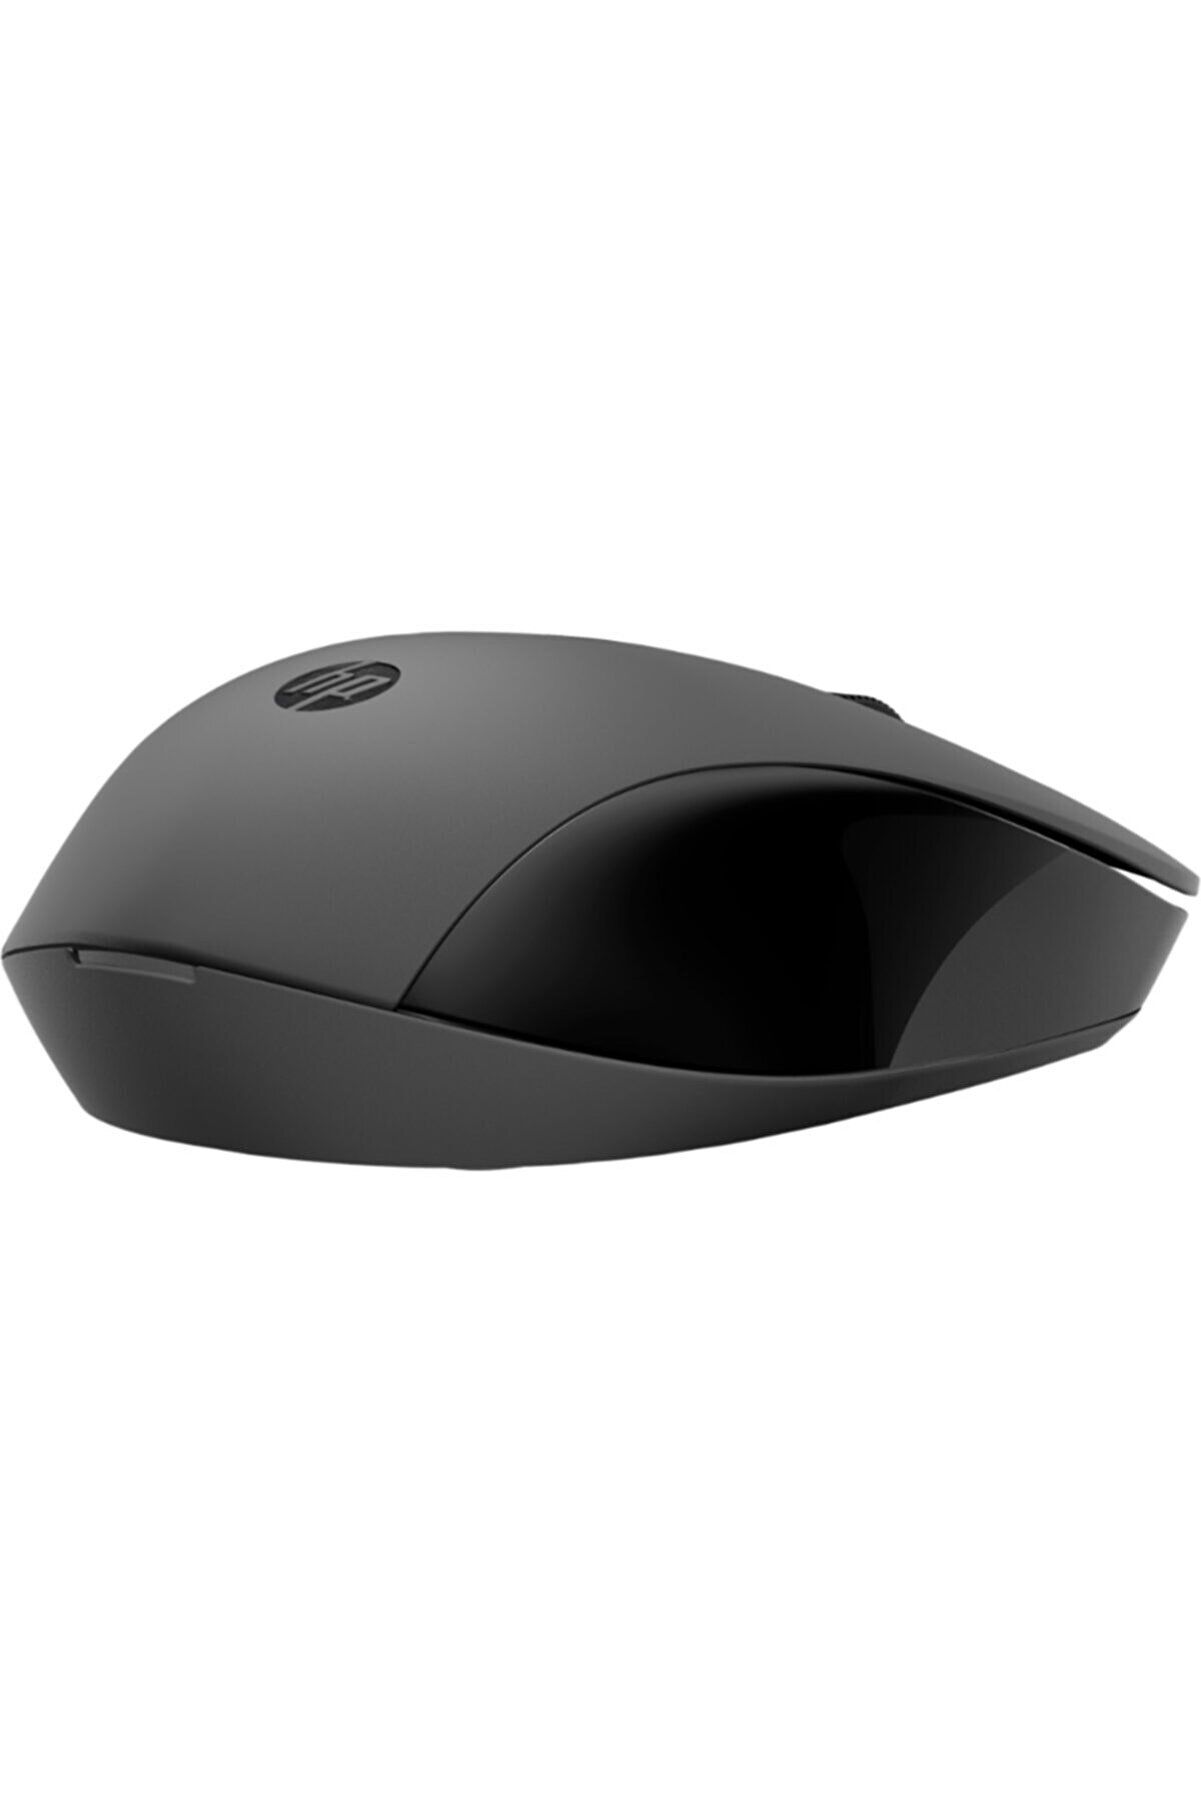 HP 150 2S9L1AA Siyah Kablosuz Mouse